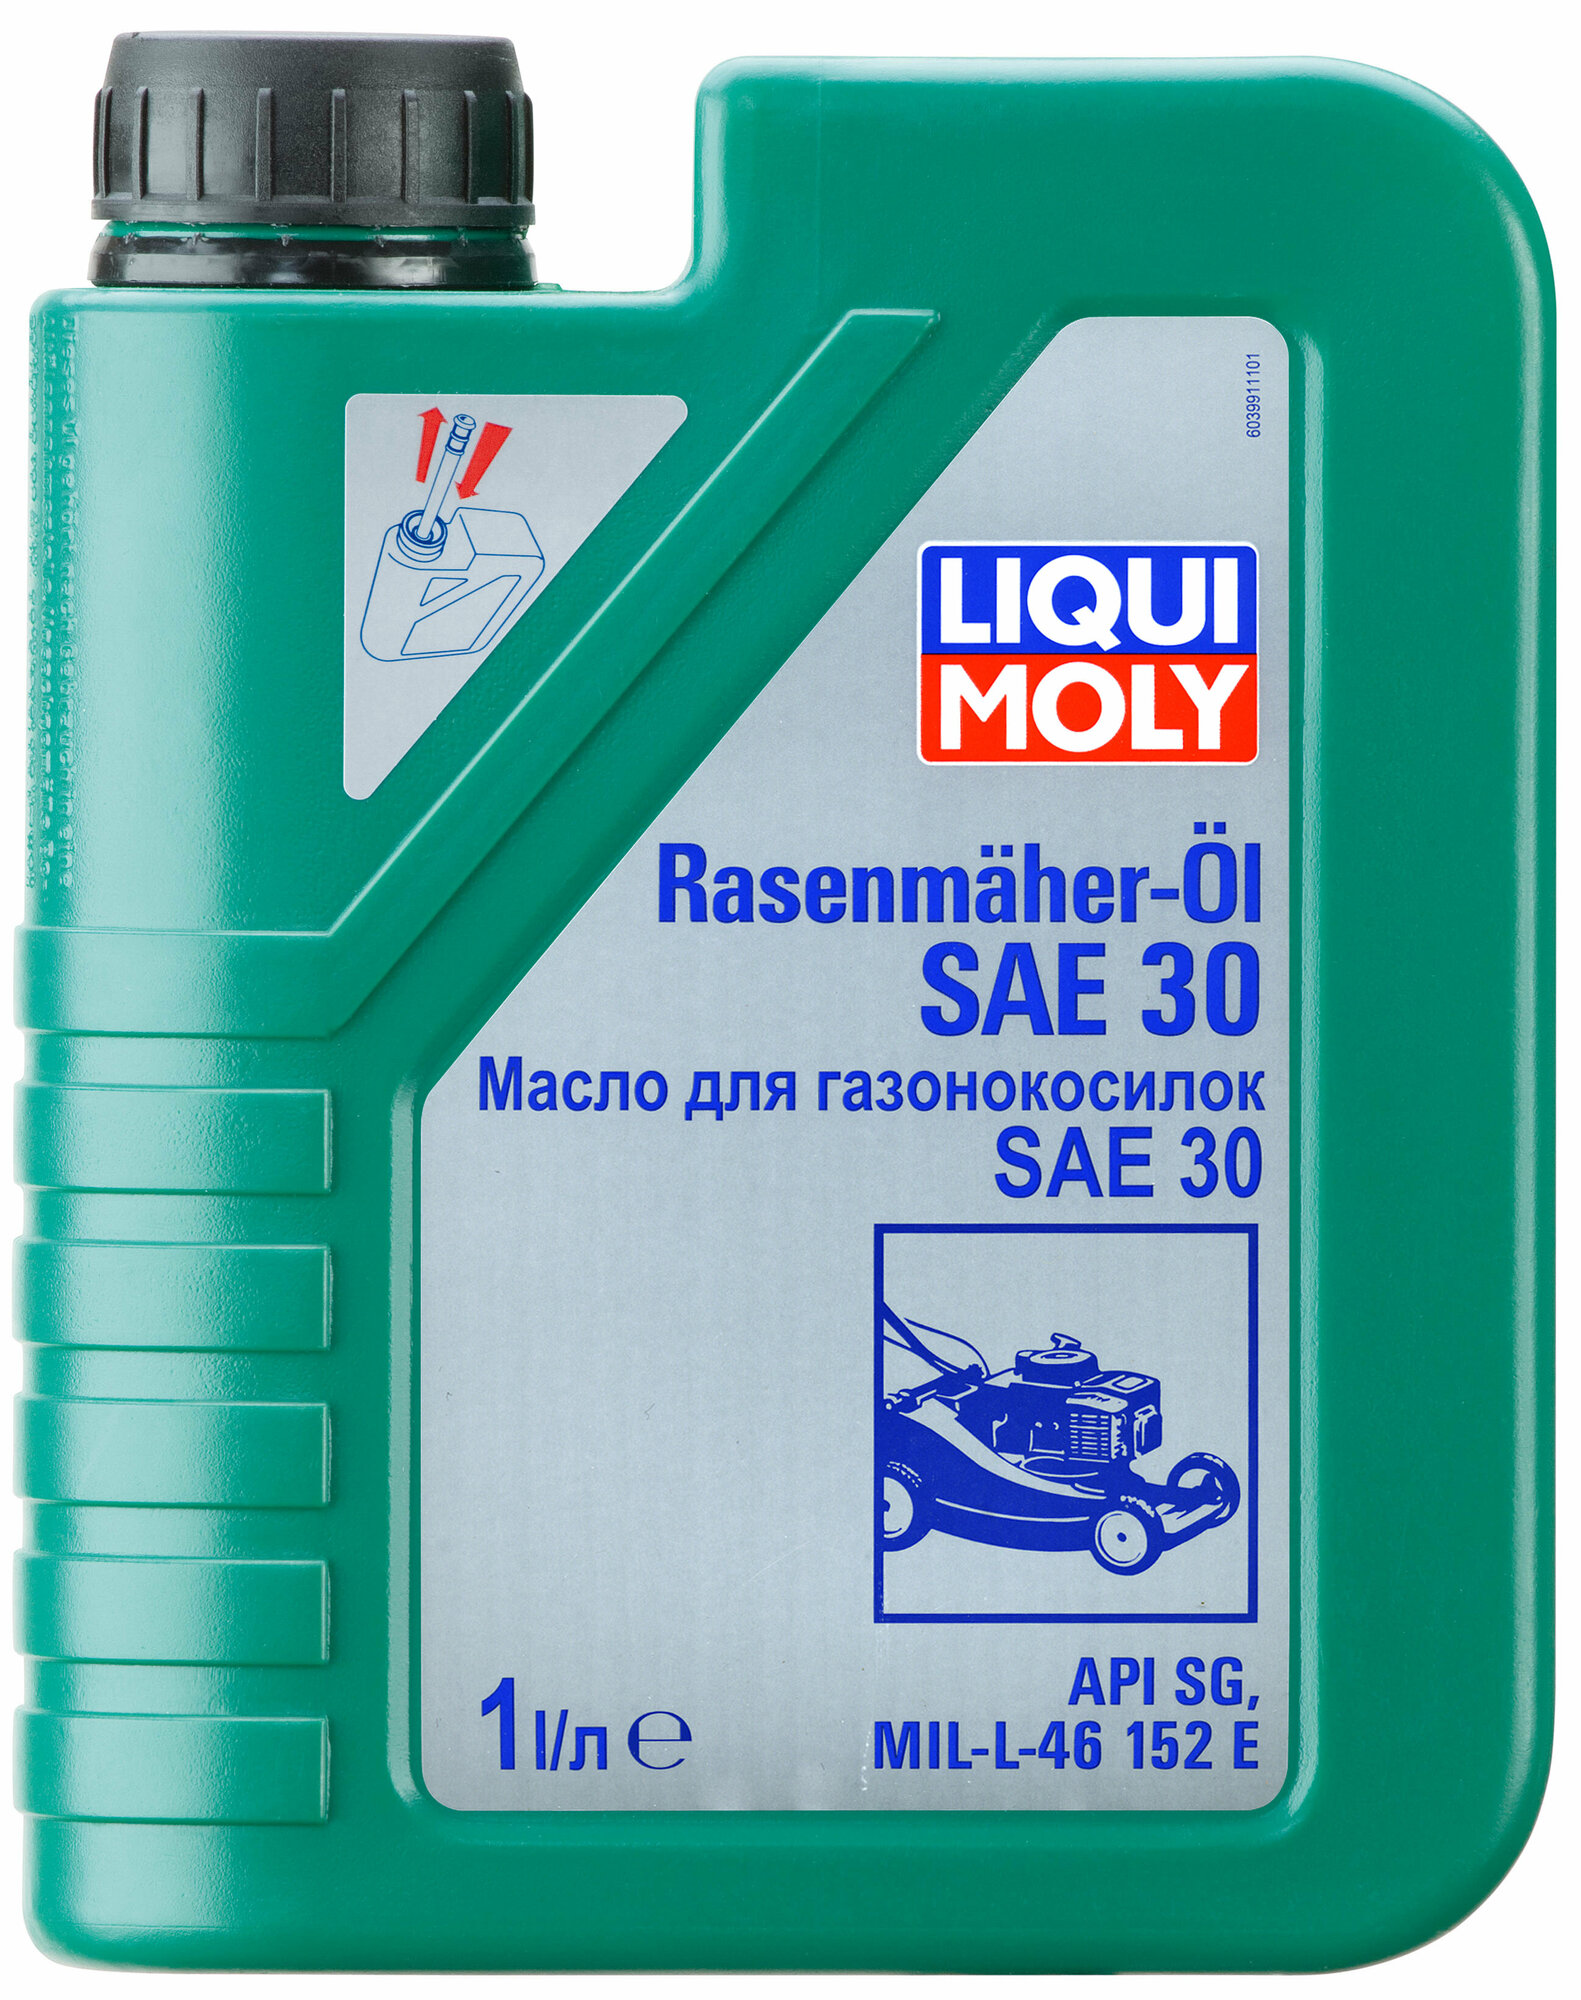 Минеральное масло 4-тактное для газонокосилок Rasenmuher-Oil SAE 30 Liqui Moly LM-1264/3991